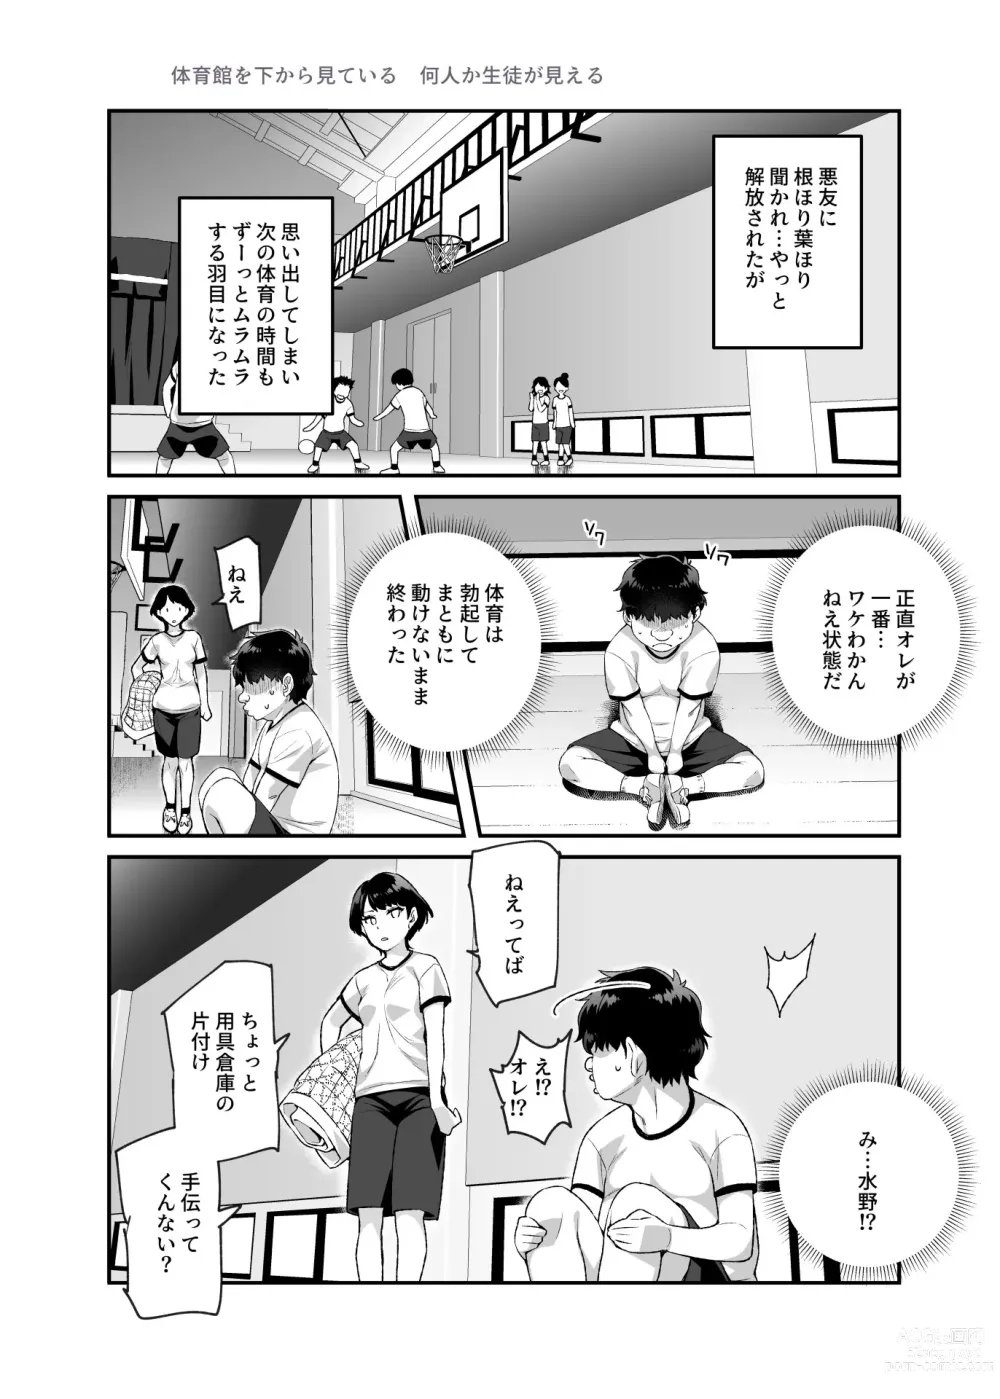 Page 21 of doujinshi Ore de Shojohaka Sureba Shiawase ninaruto Bazzutte EX